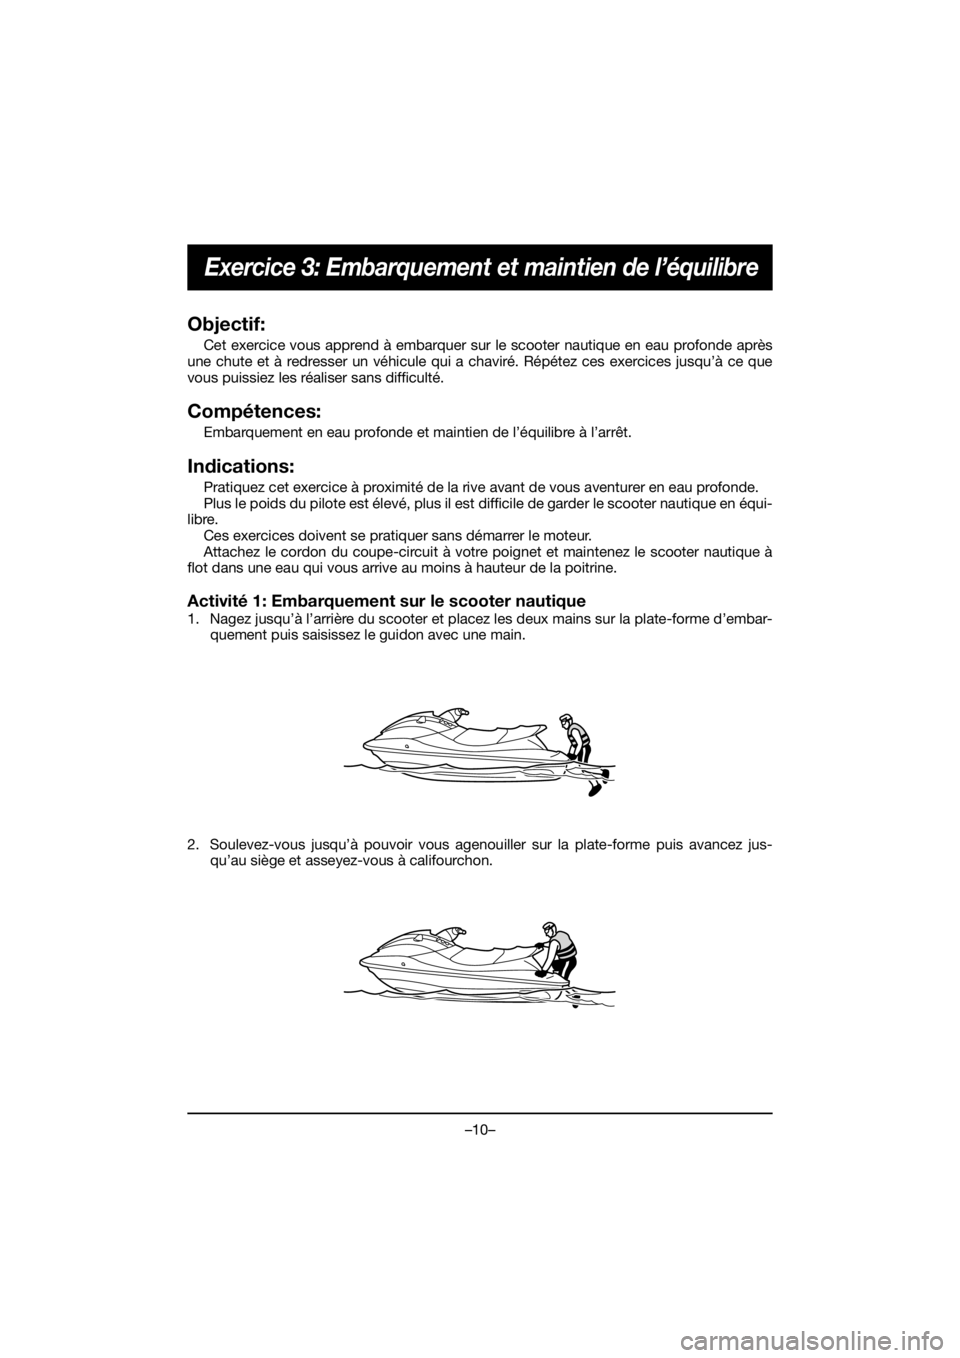 YAMAHA EX 2021  Manuale de Empleo (in Spanish) –10–
Exercice 3: Embarquement et maintien de l’équilibre
Objectif:
Cet exercice vous apprend à embarquer sur le scooter nautique en eau profonde après
une chute et à redresser un véhicule q